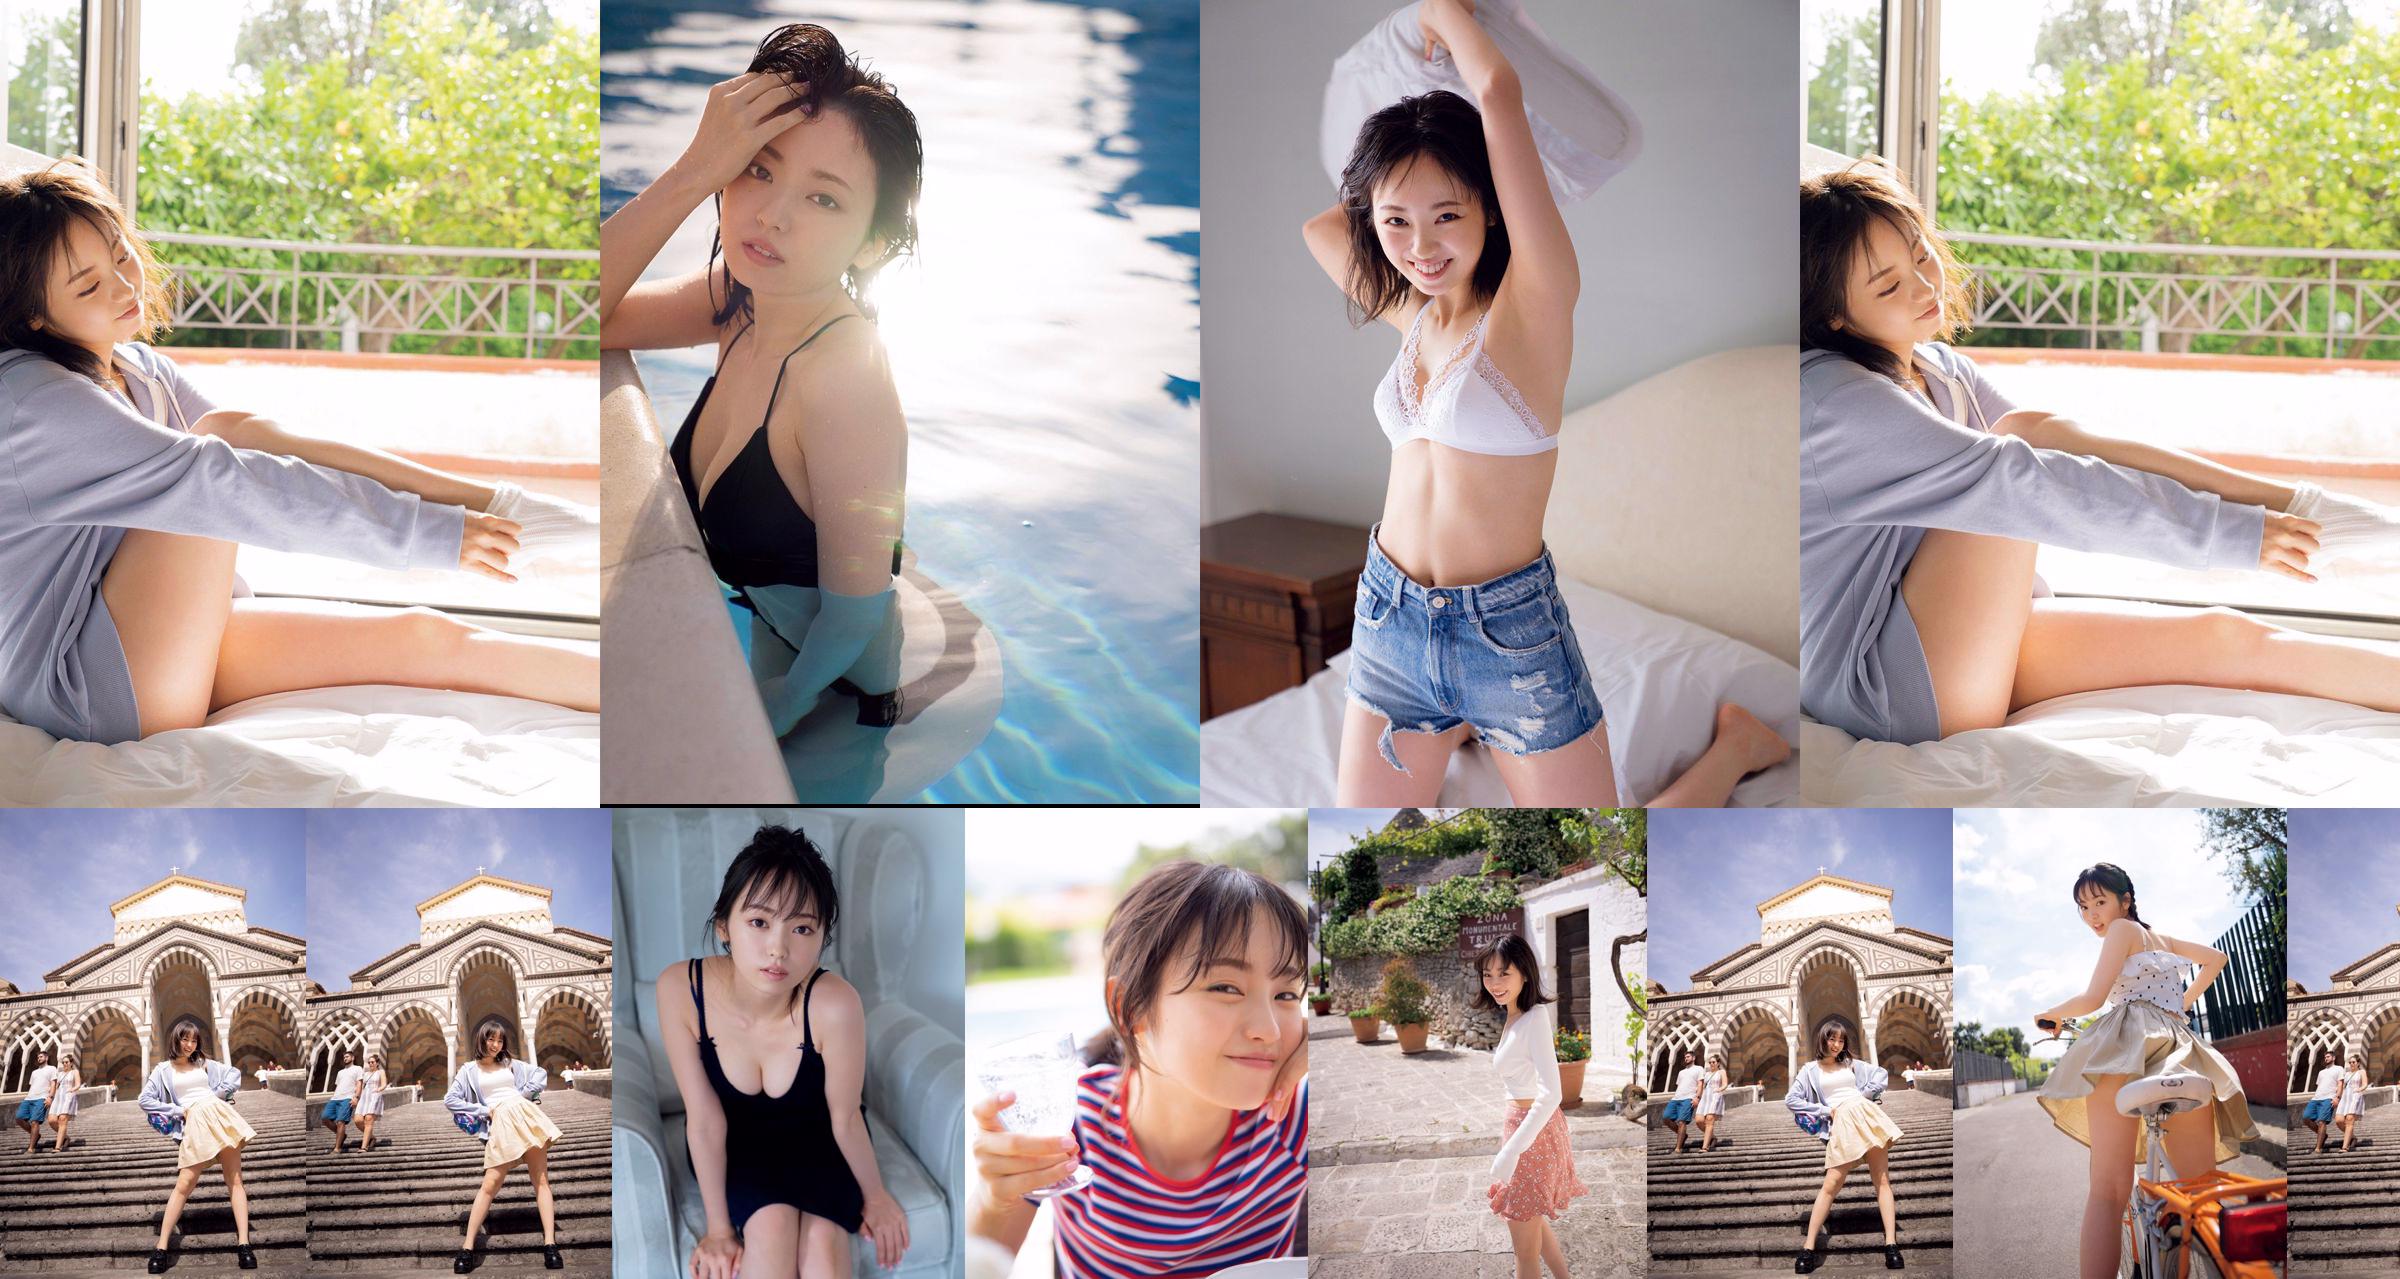 [วันศุกร์] Keyakizaka46, Yui Imaizumi "Swimsuit & Lingerie of" First and Last! "" รูปภาพ No.deef96 หน้า 1